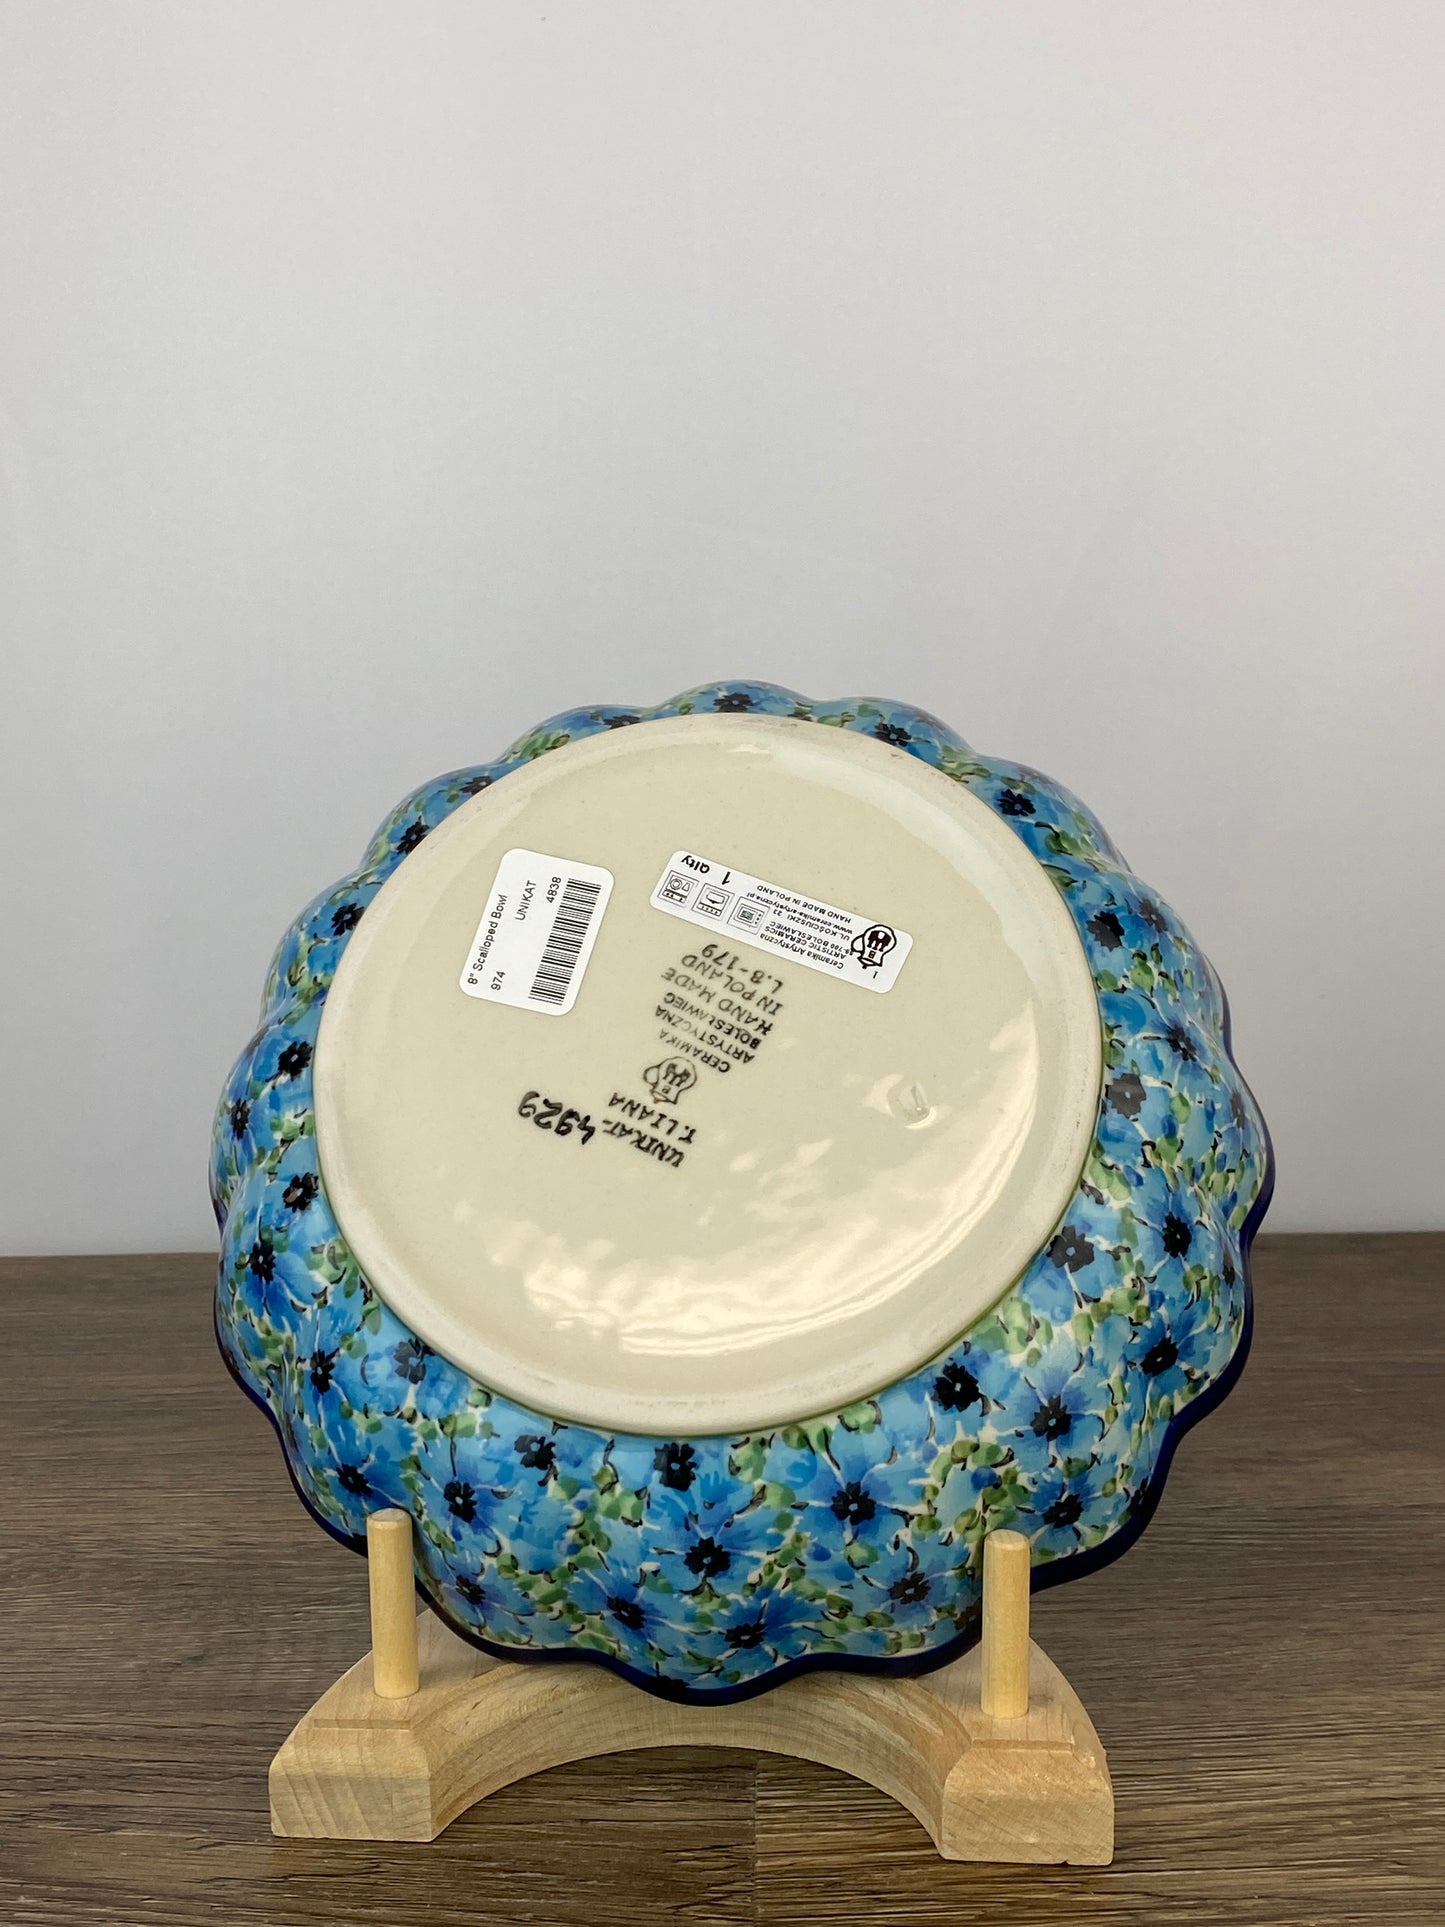 Unikat Scalloped Bowl - Shape 974 - Pattern U4929